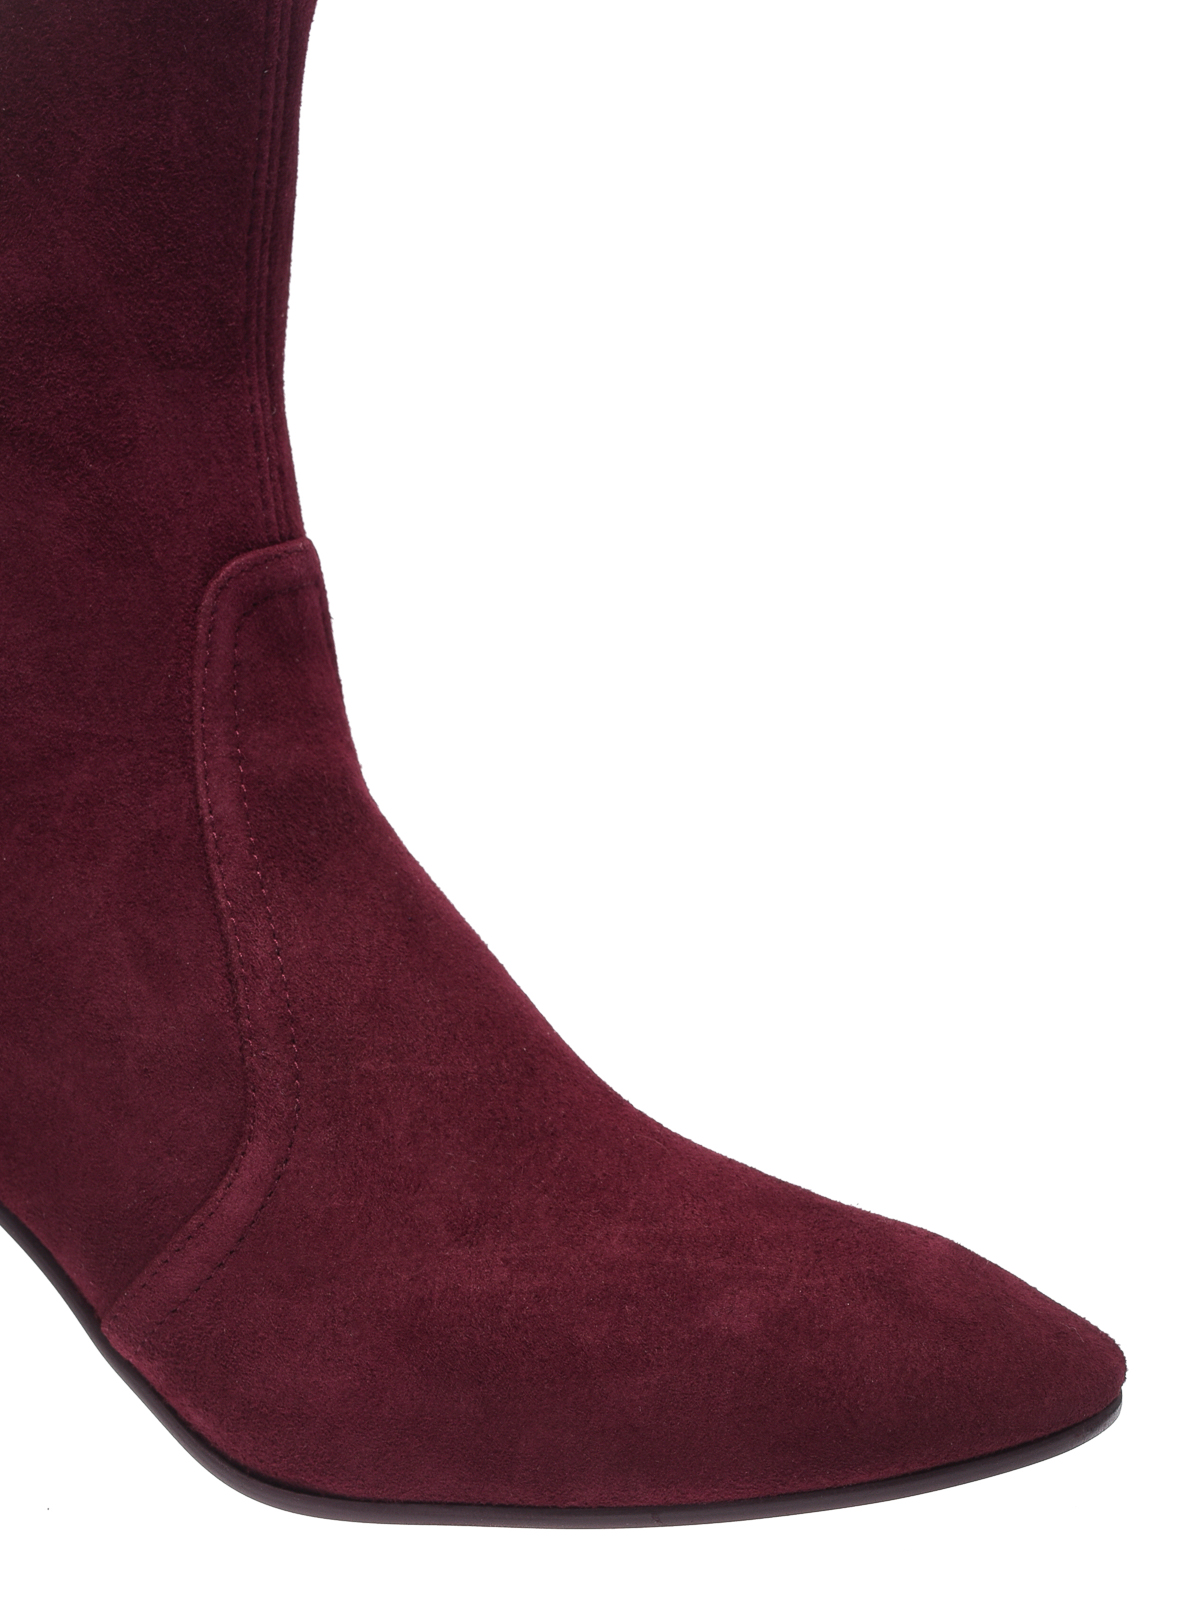 burgundy suede ankle boots,lamartinieregirlscollegelko.com